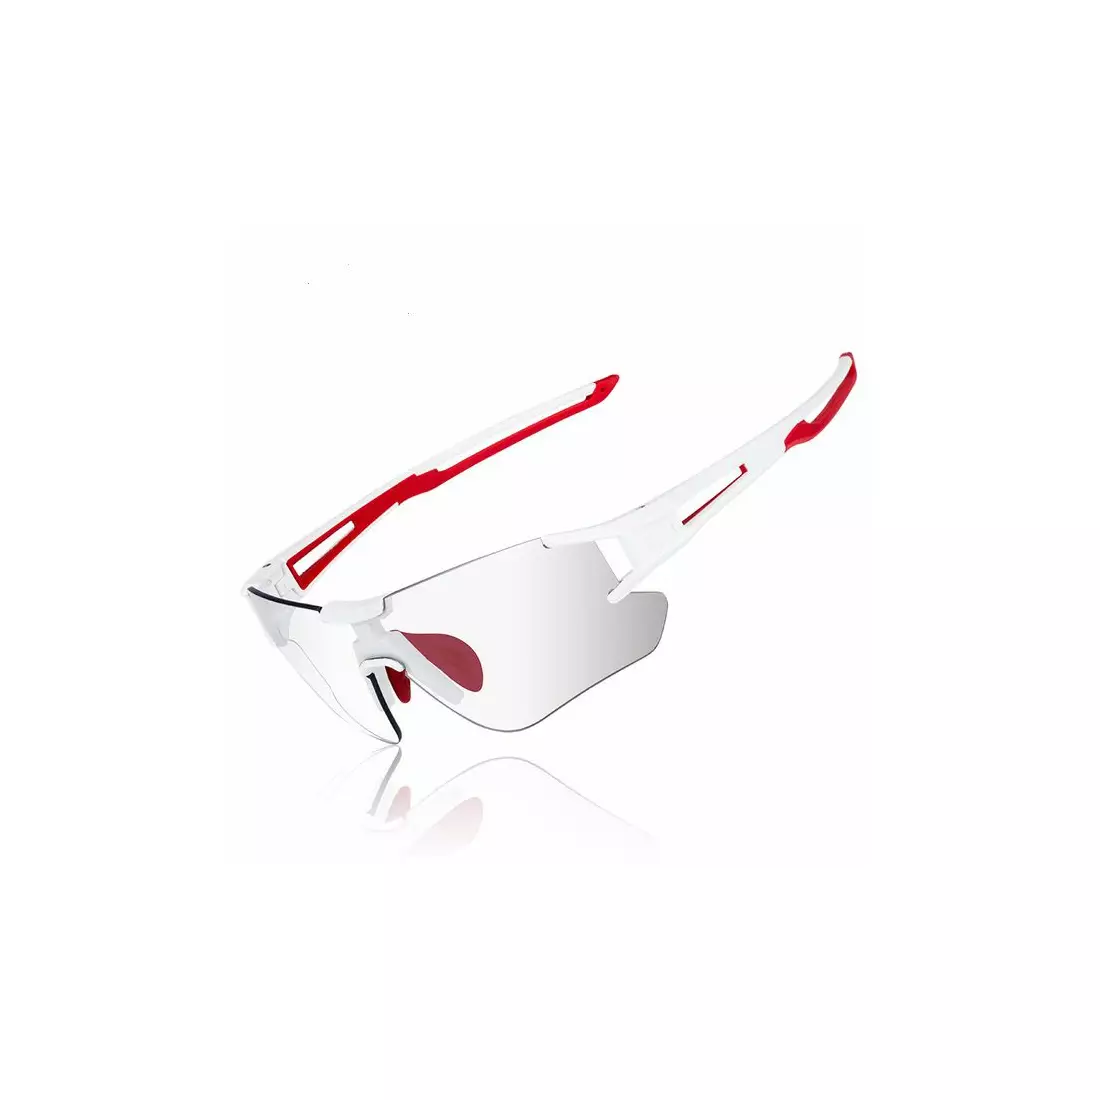 Rockbros 10126 Fahrrad / Sportbrille mit Photochrom  Weiß-rot